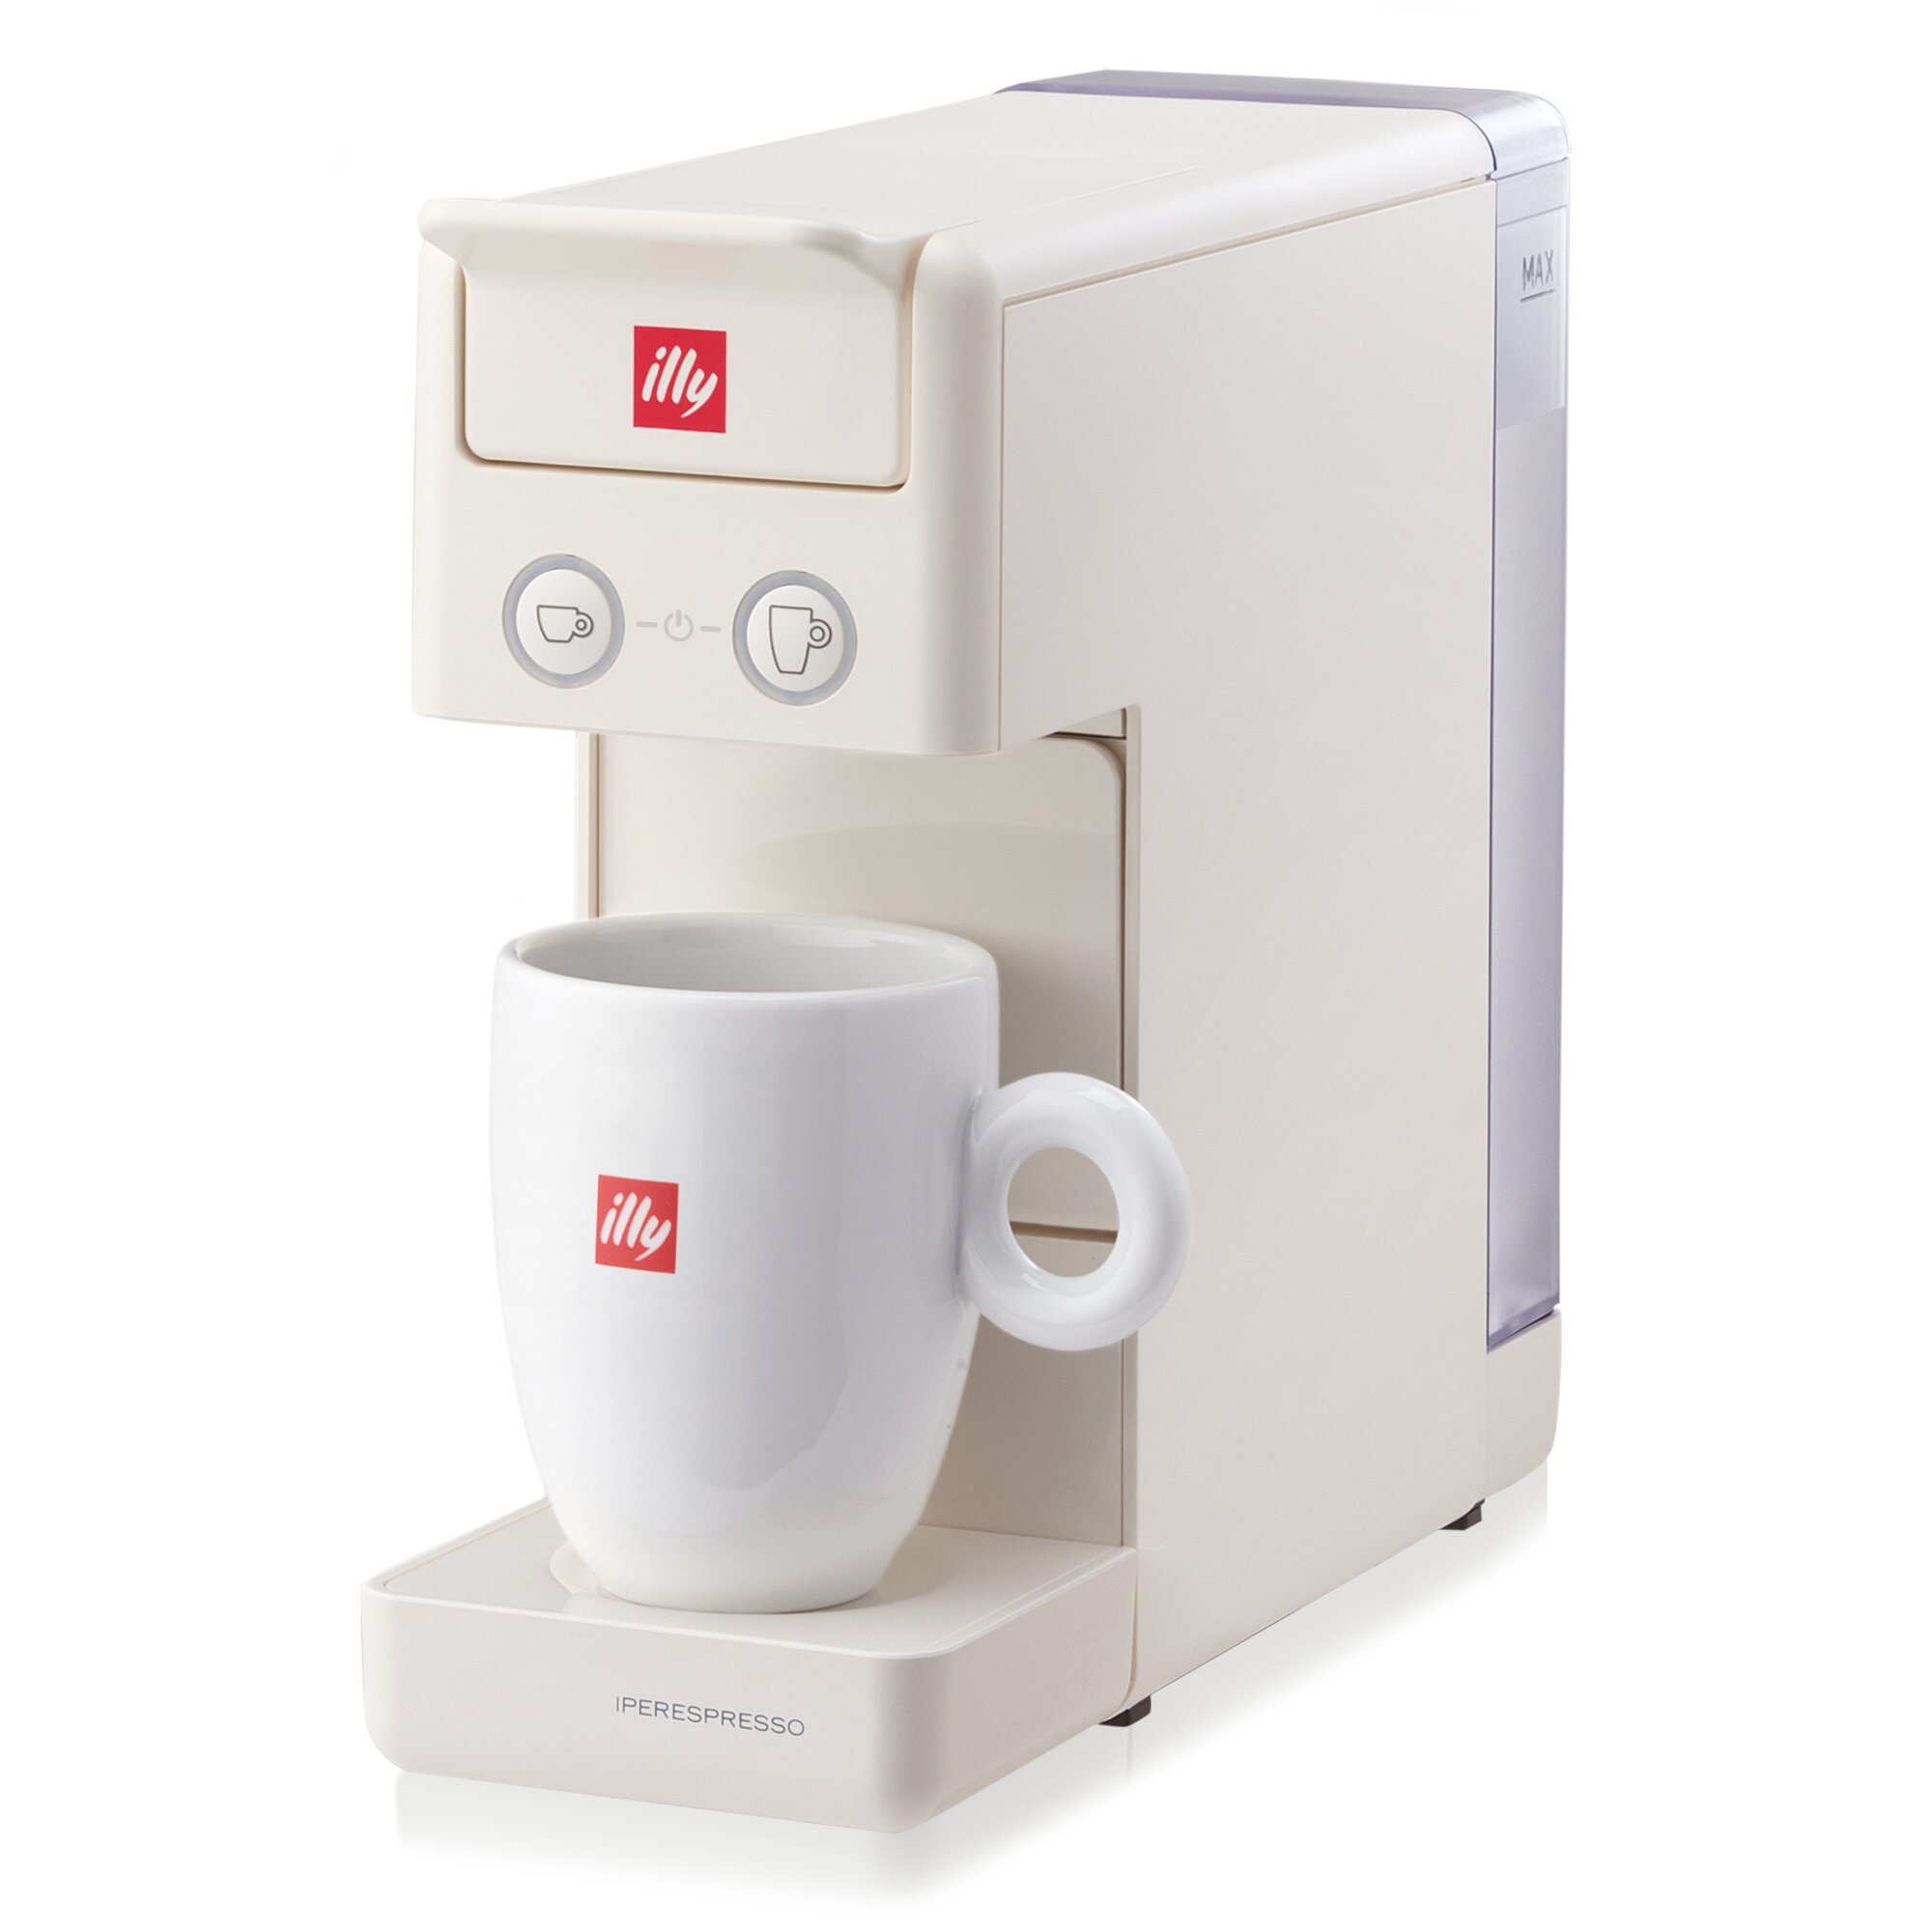 Caffe & Espresso Iper Espresso Machine | Wayfair